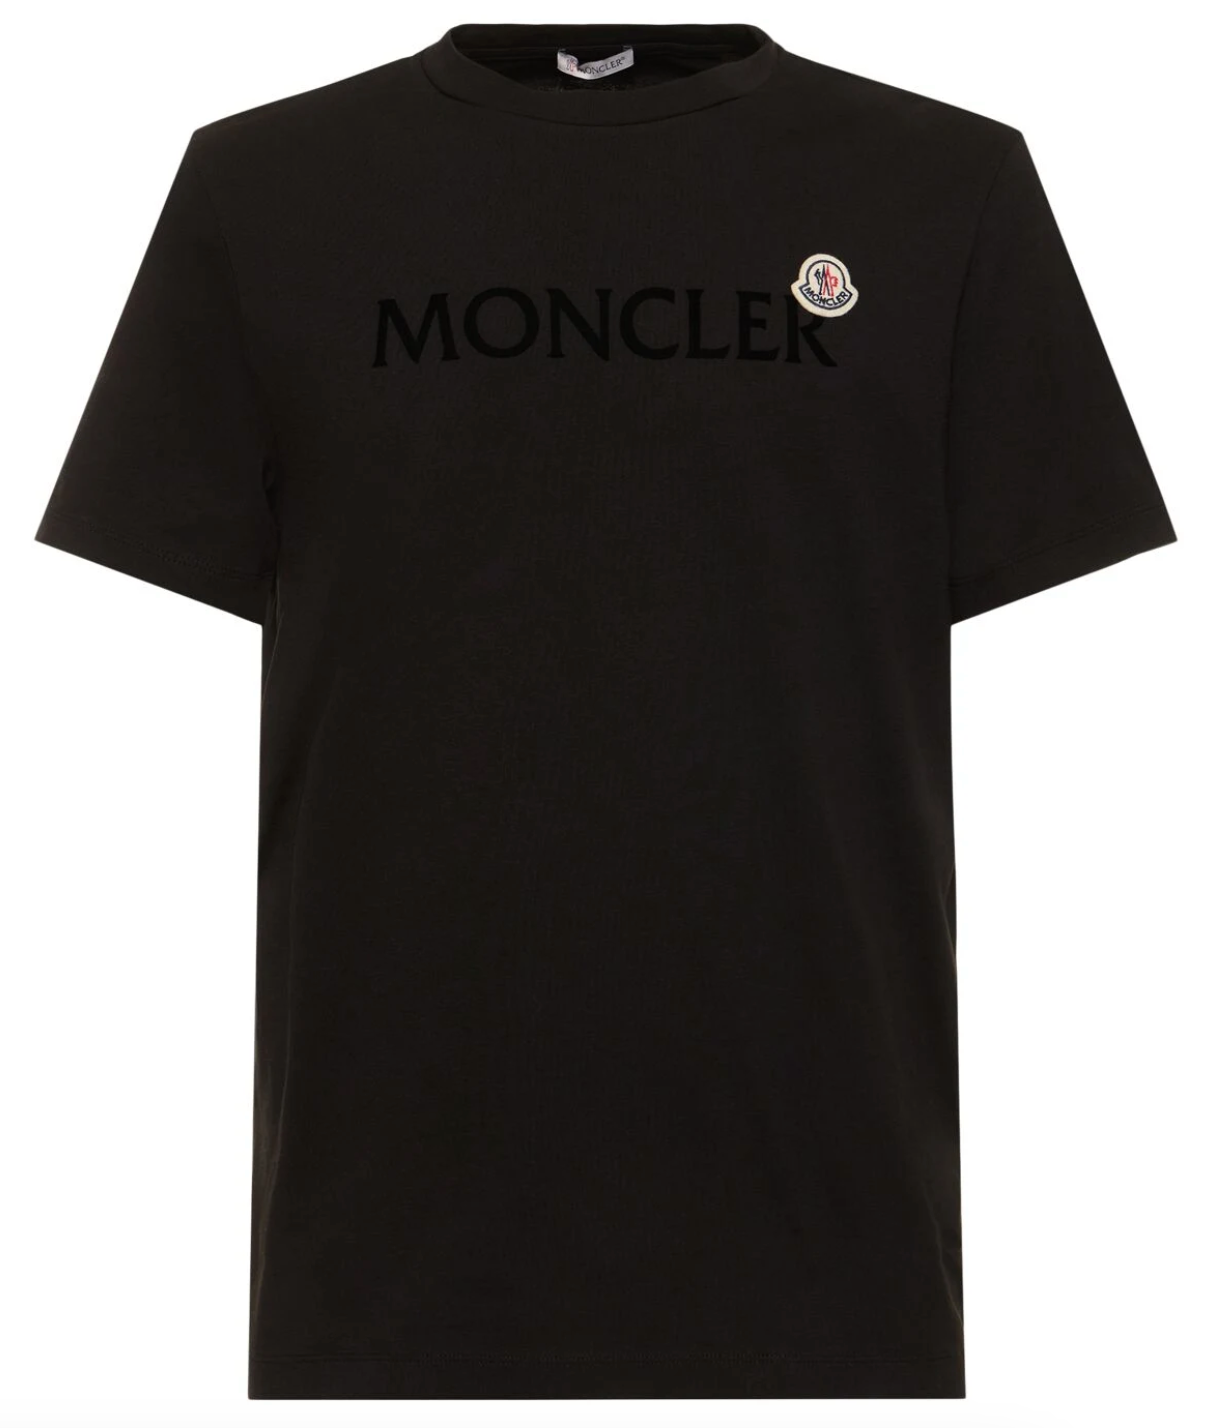 Moncler Logo Cotton T-shirt Black 2Front Lodz Polska